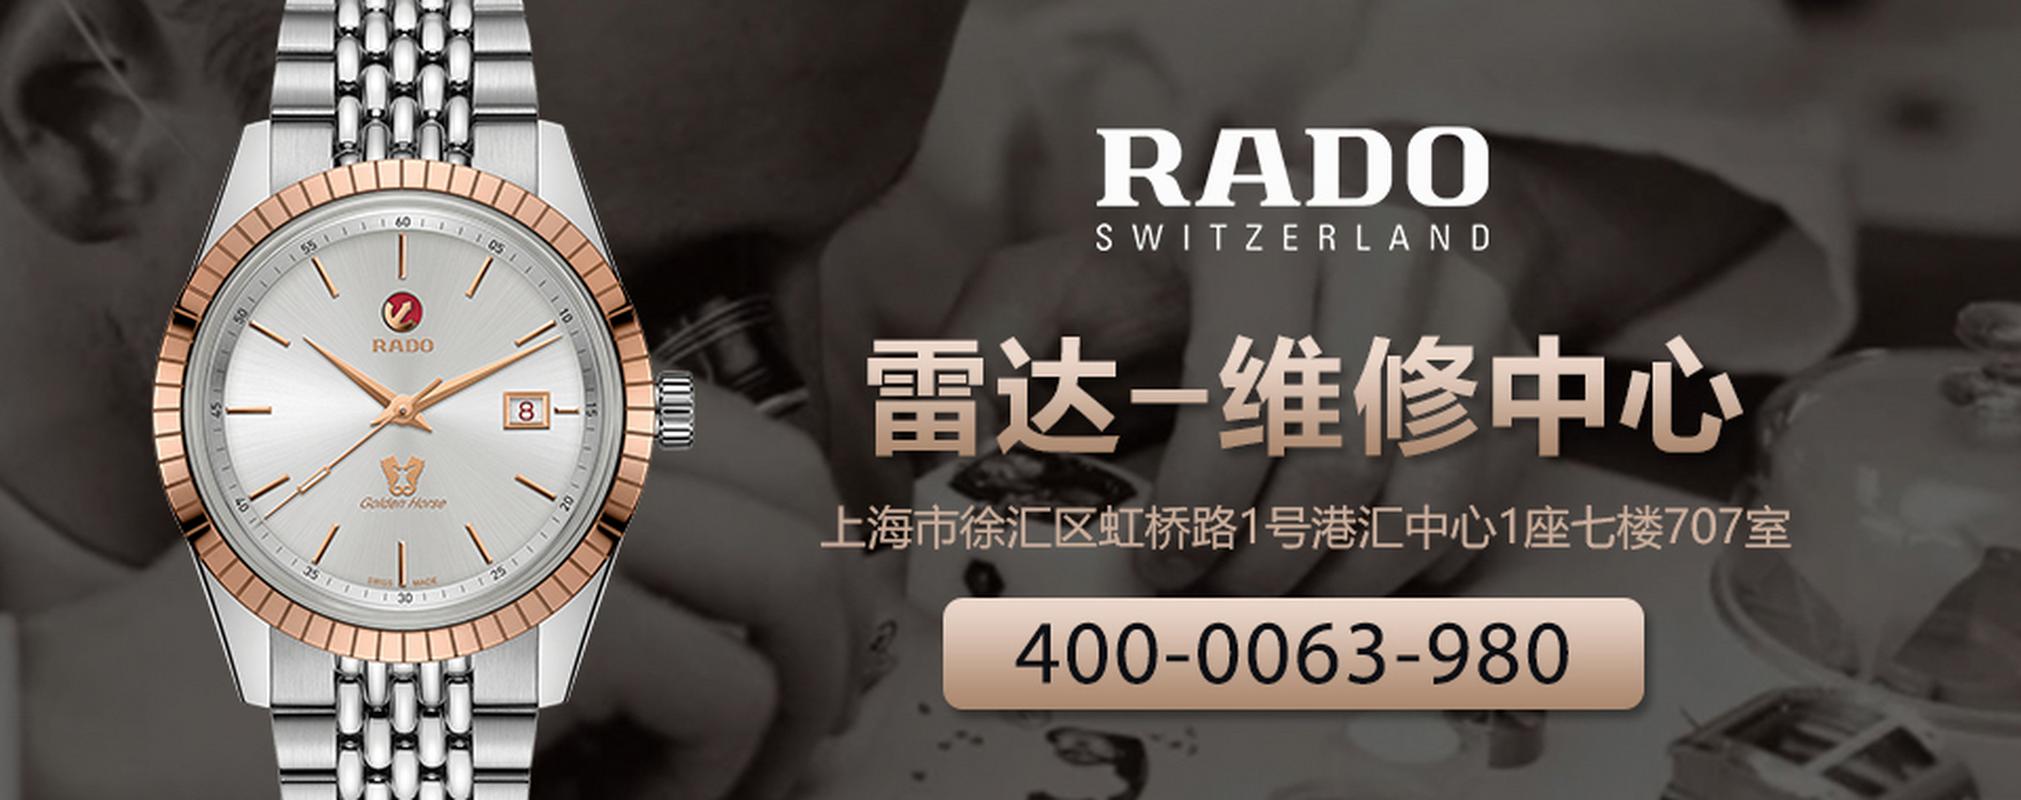 雷达手表 腕表保养维修中心,400腕表-006服务-3980热线.